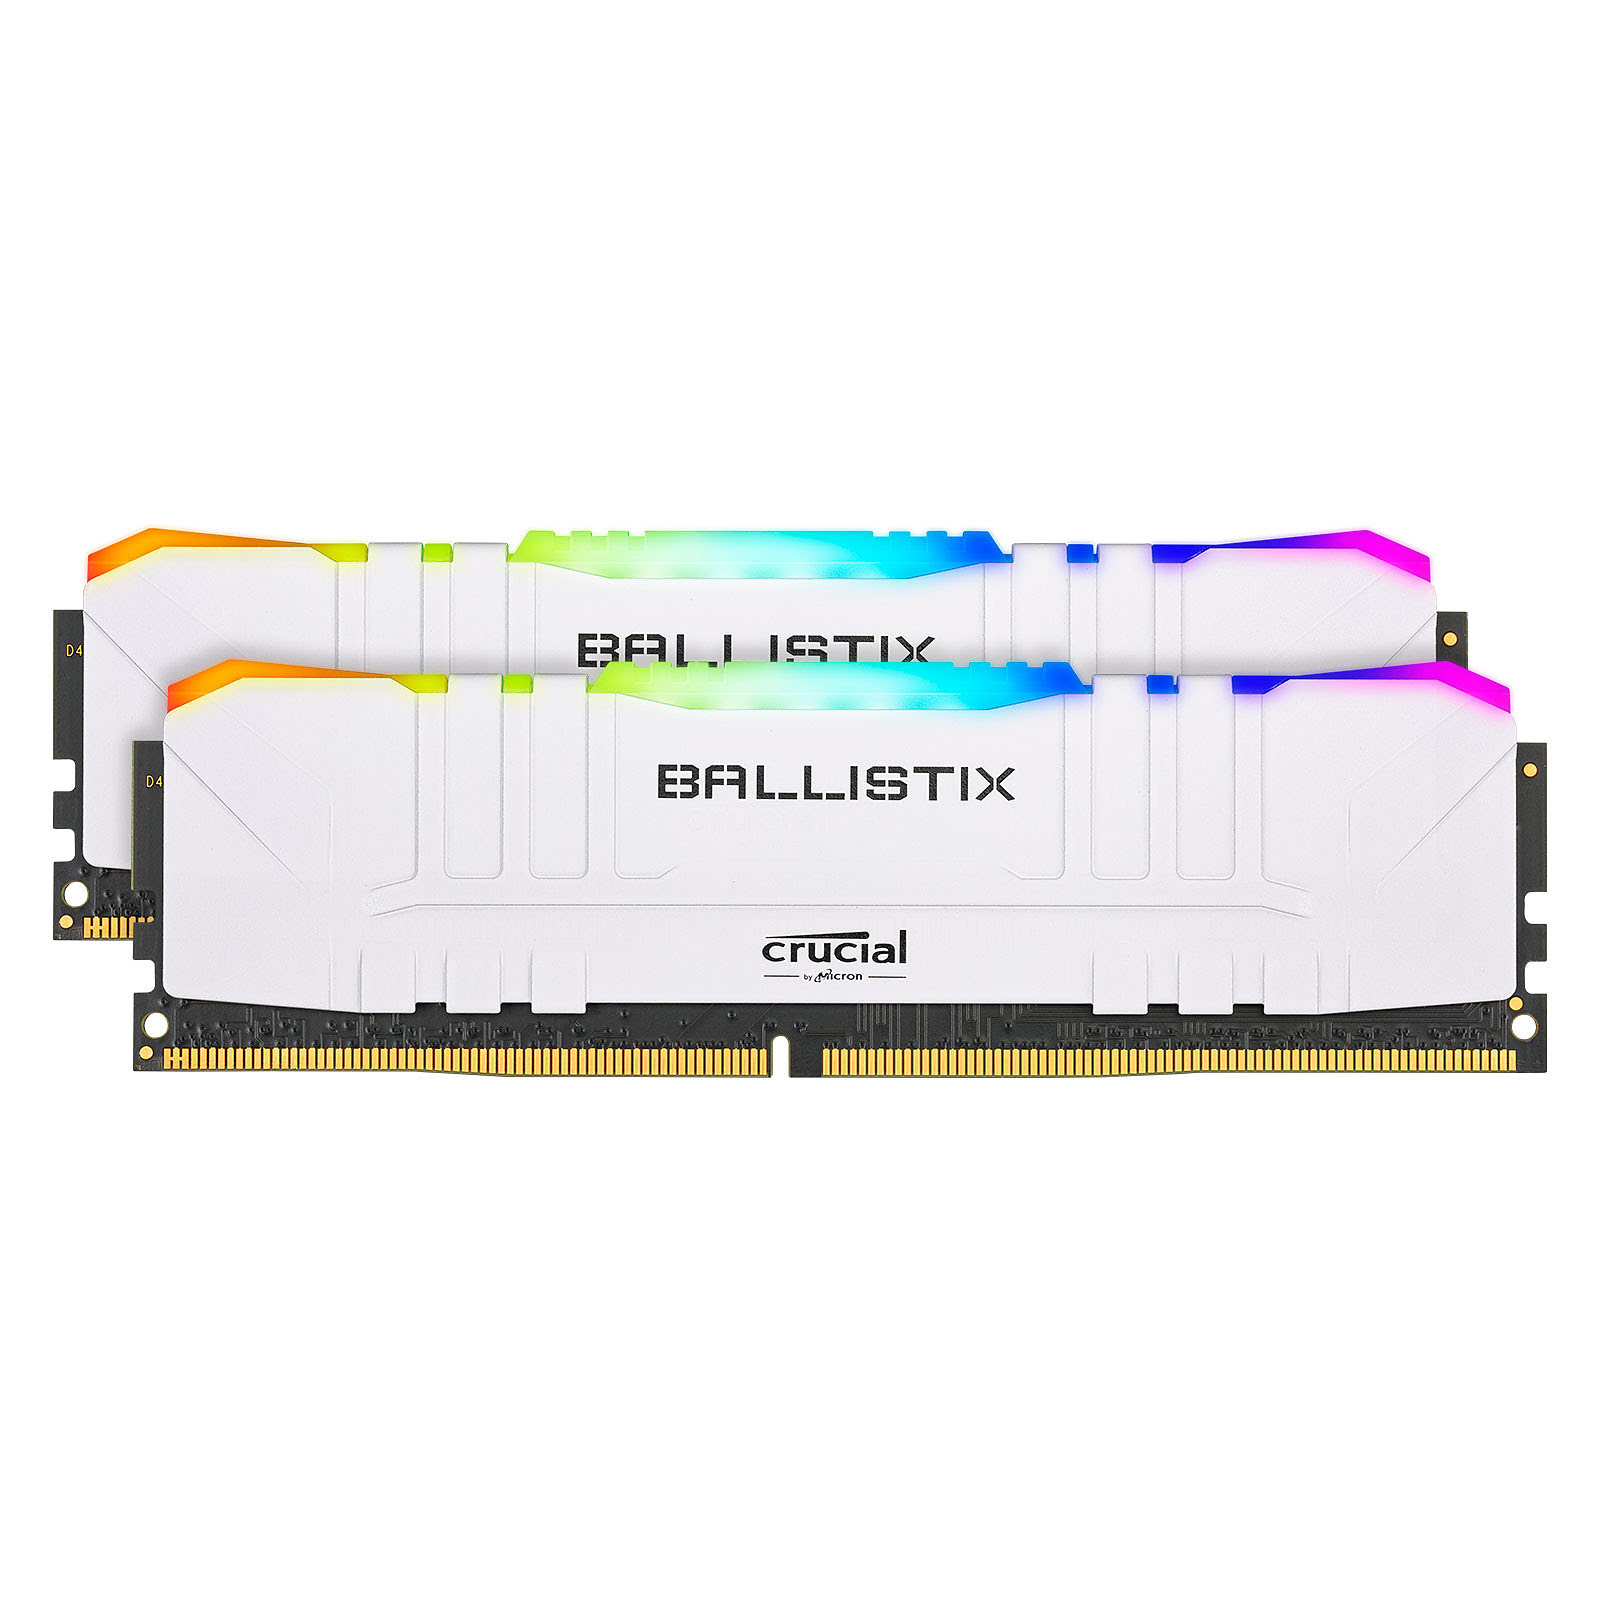 Ballistix RGB 8Go (1x8Go) DDR4 3000MHz - Mémoire PC Ballistix sur grosbill-pro.com - 4